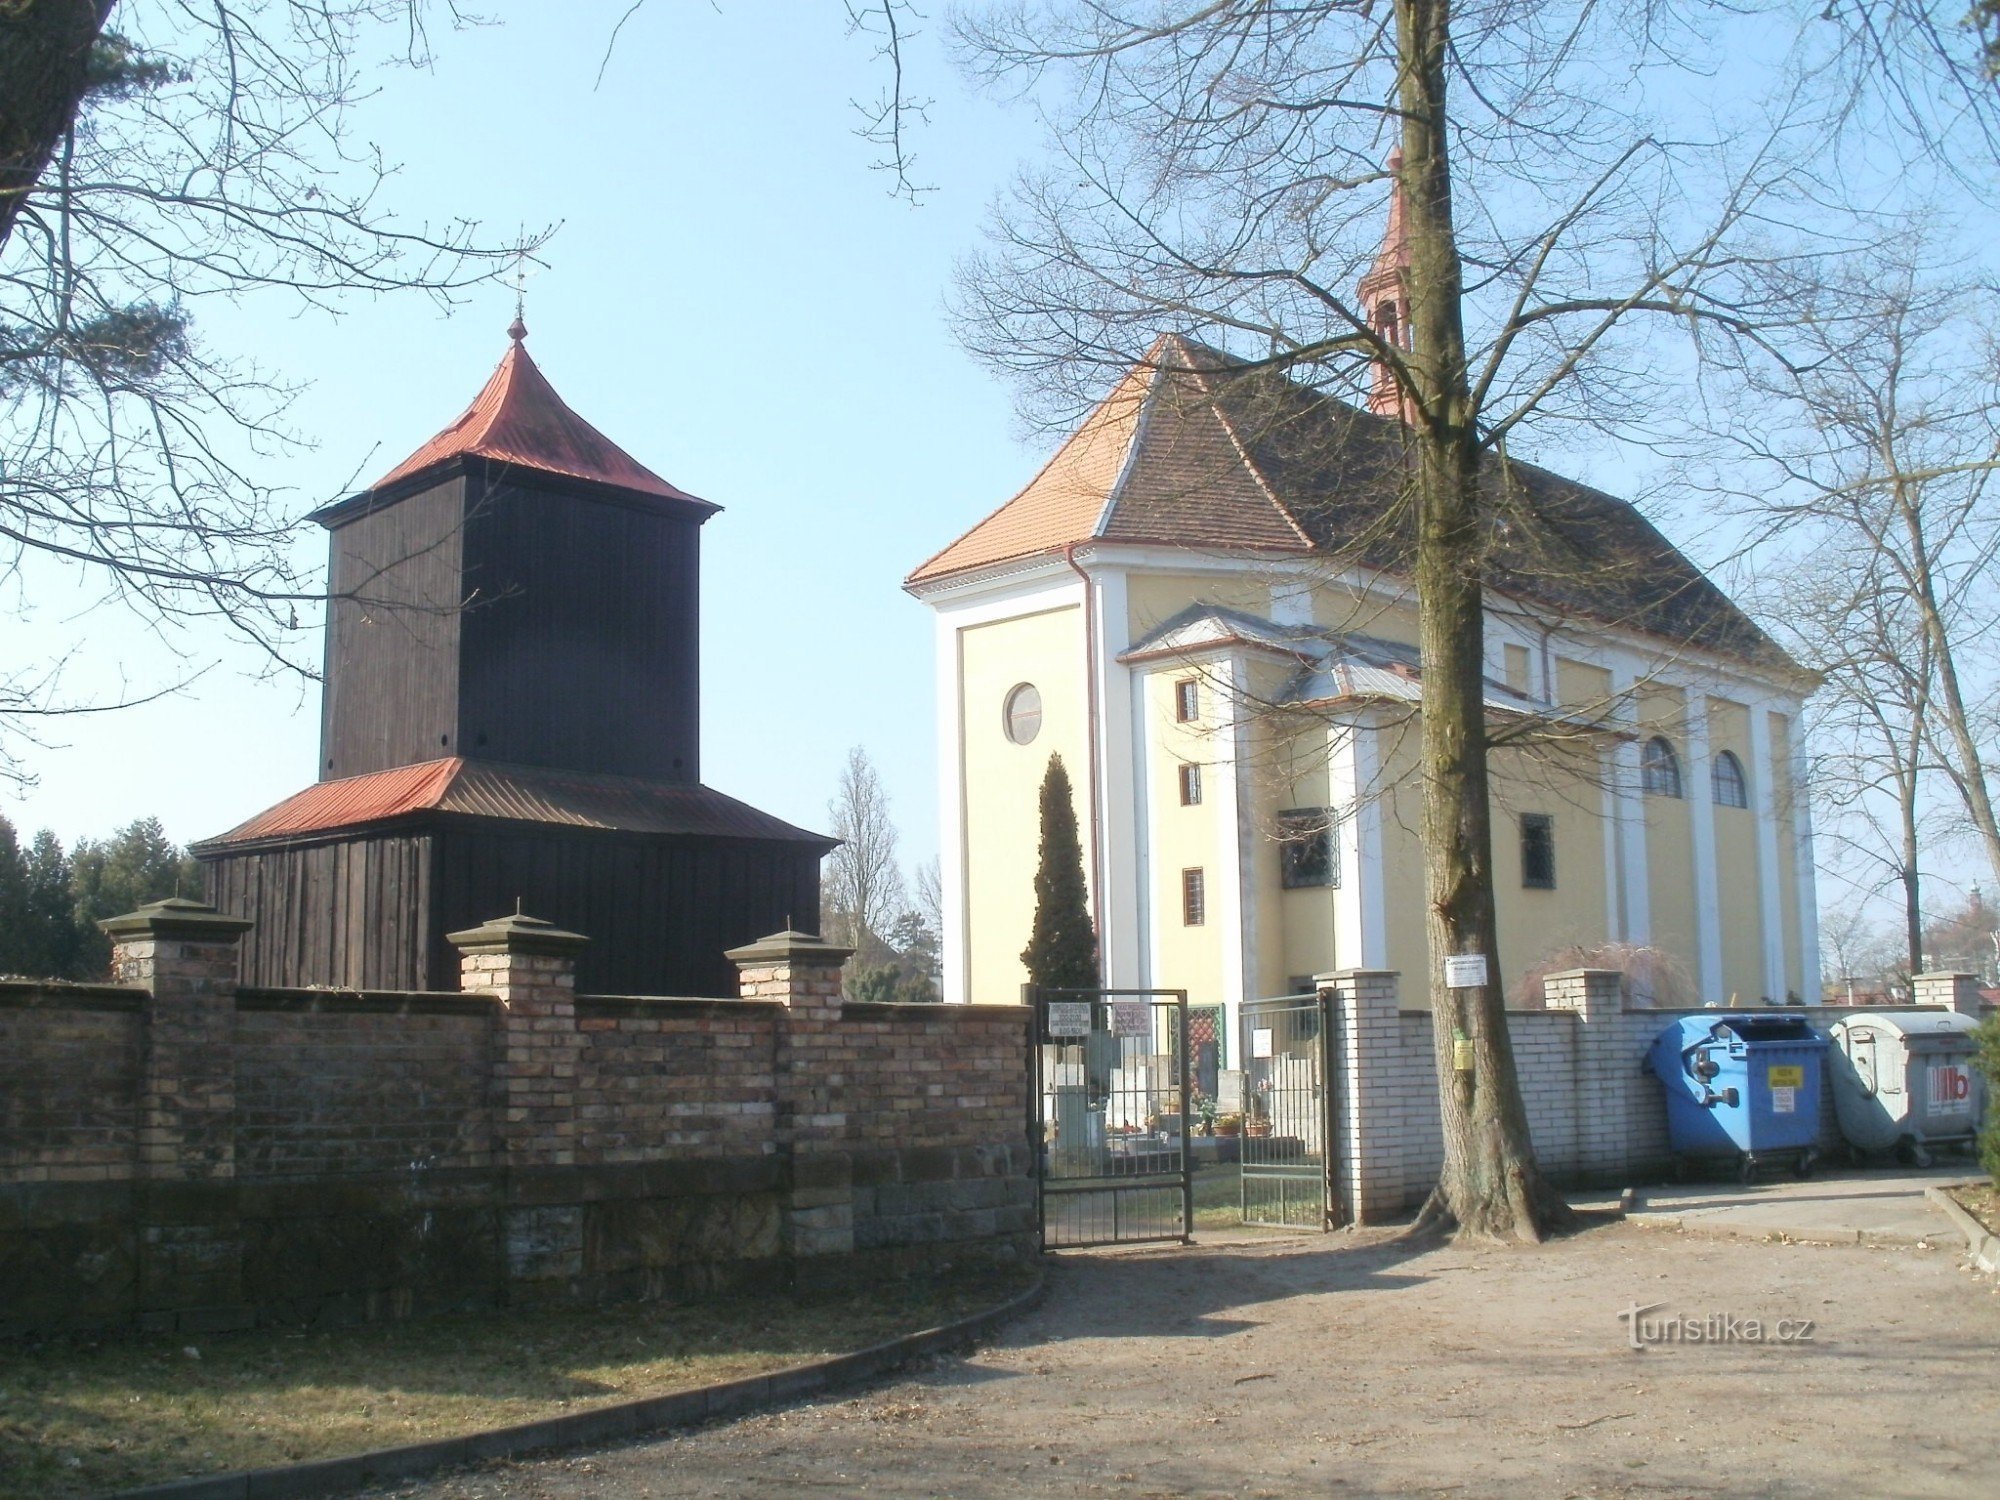 Borohrádek - nhà thờ St. Michael the Archangel